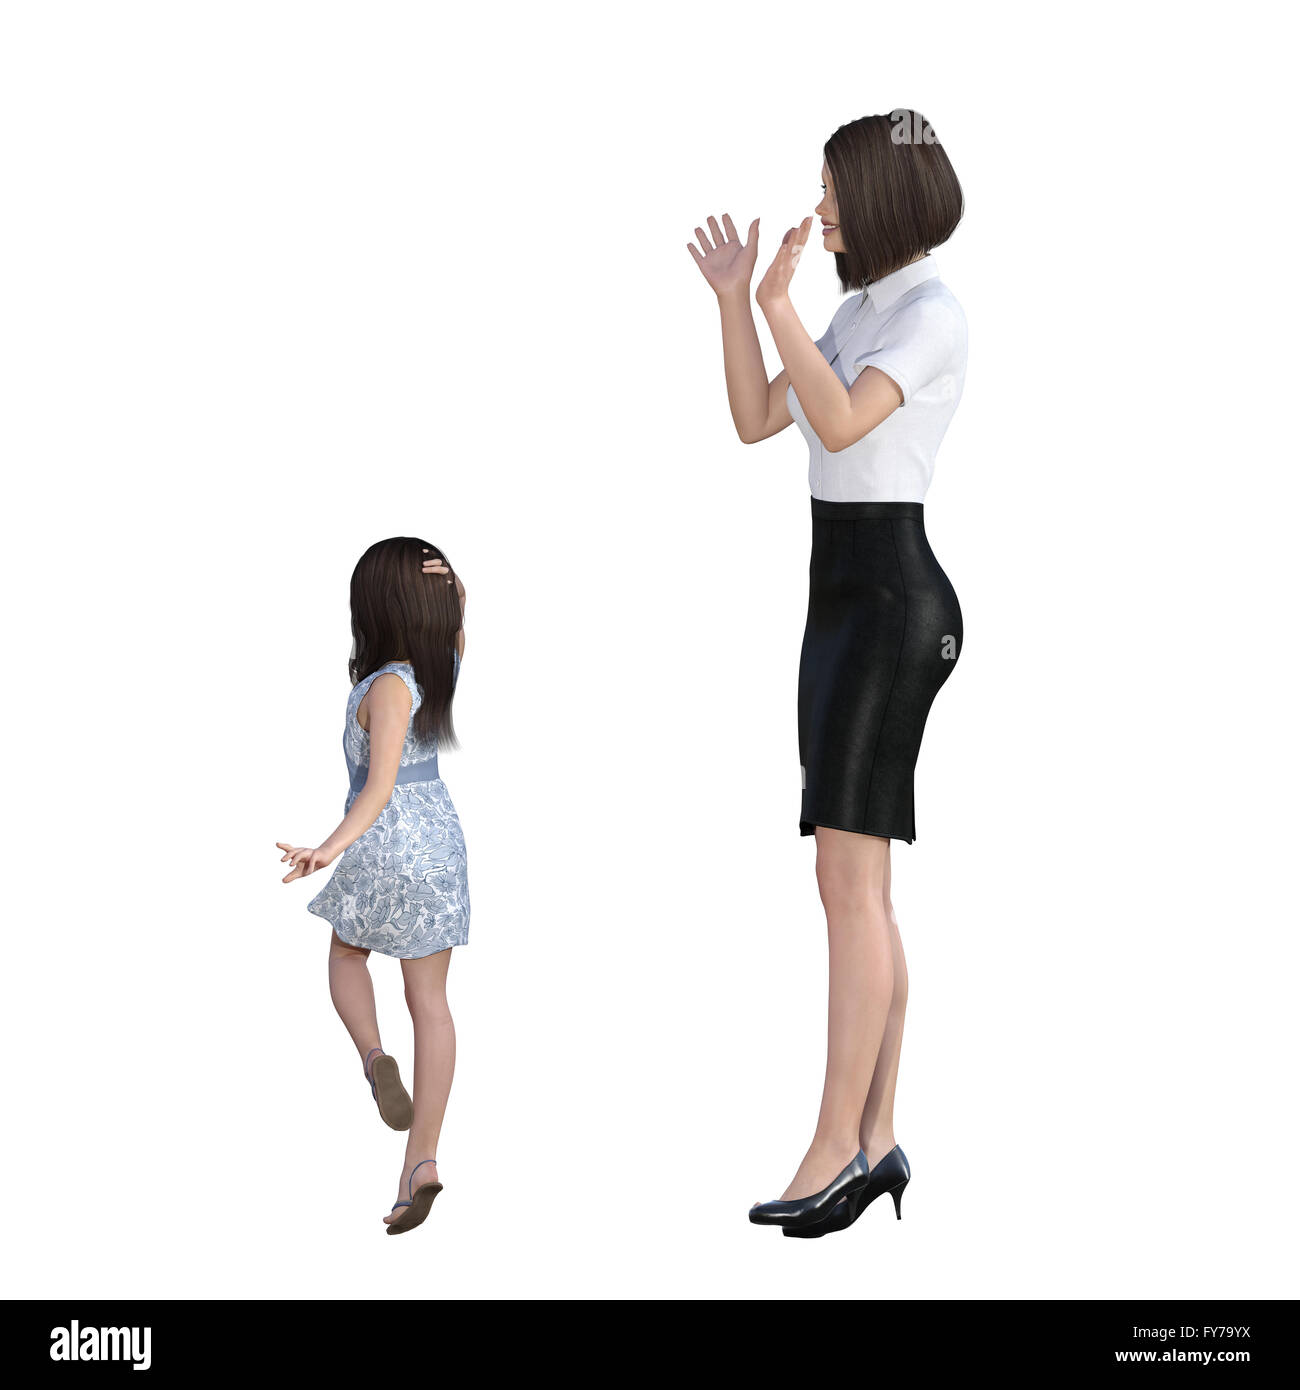 L'interaction mère-fille de jeune fille comme modèle comme un concept Illustration Banque D'Images